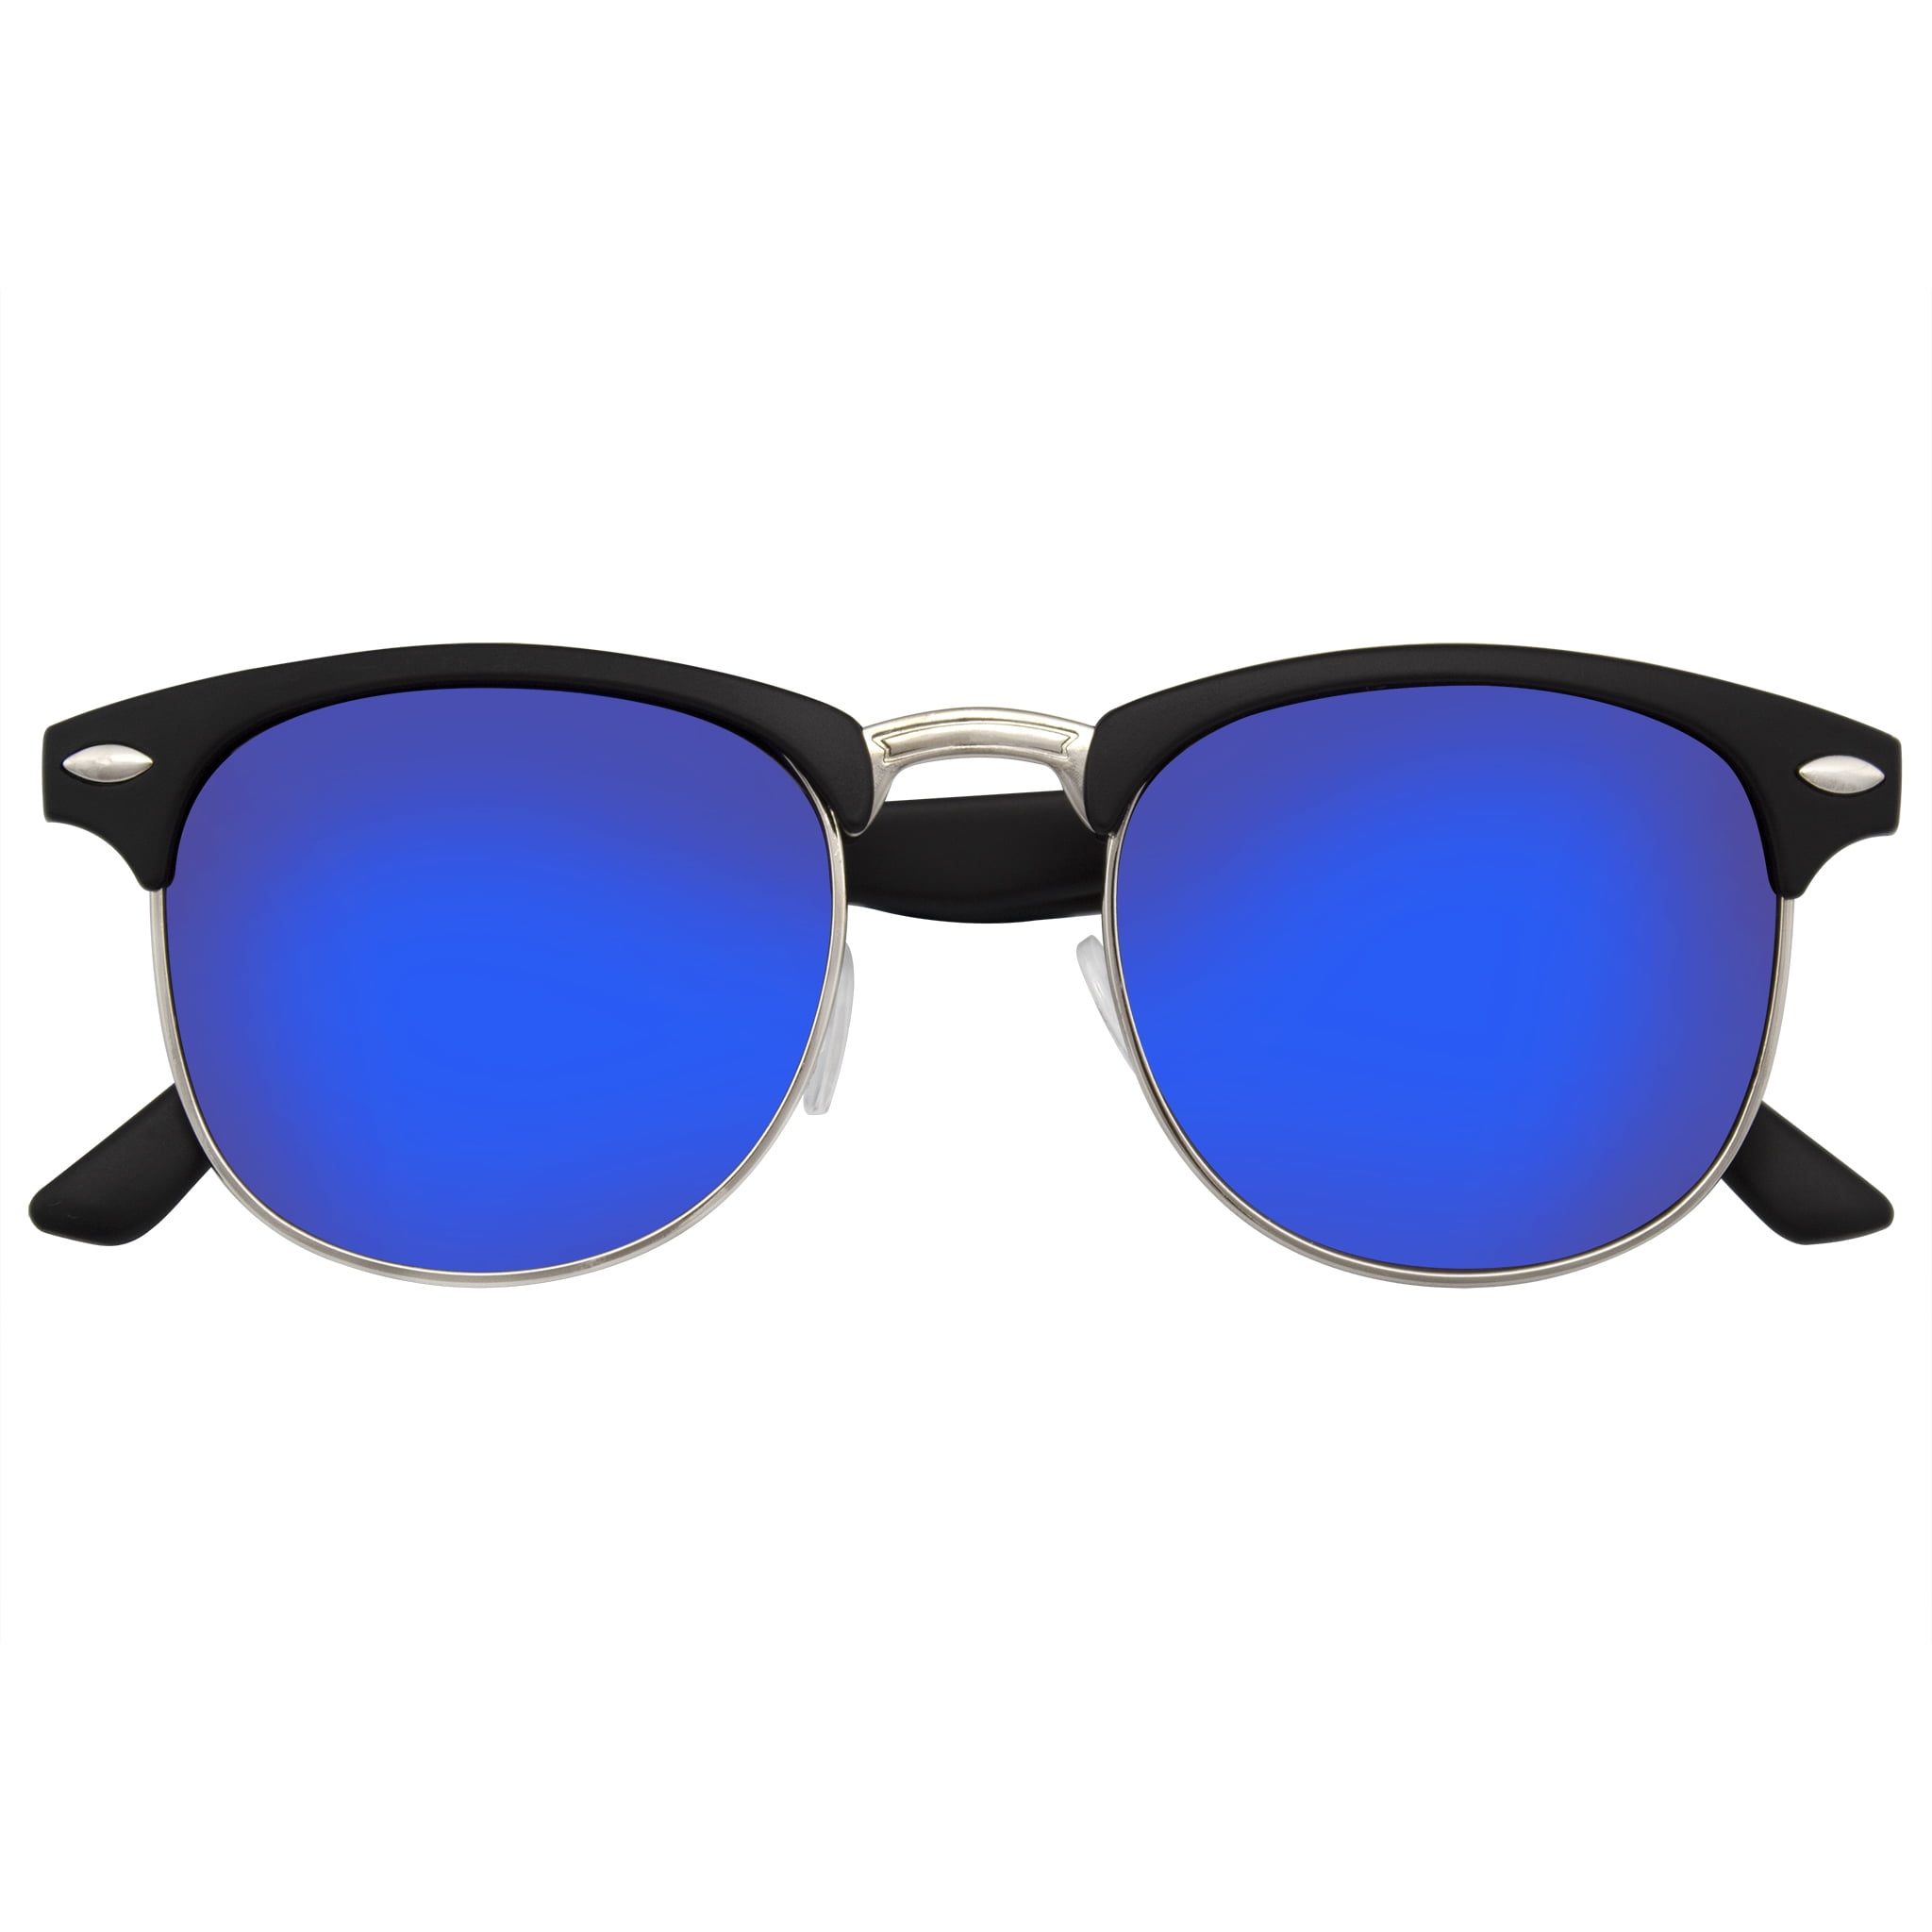 Black Neon Orange horned rim sunglasses with mirror lens Classic 80's 2 tone 